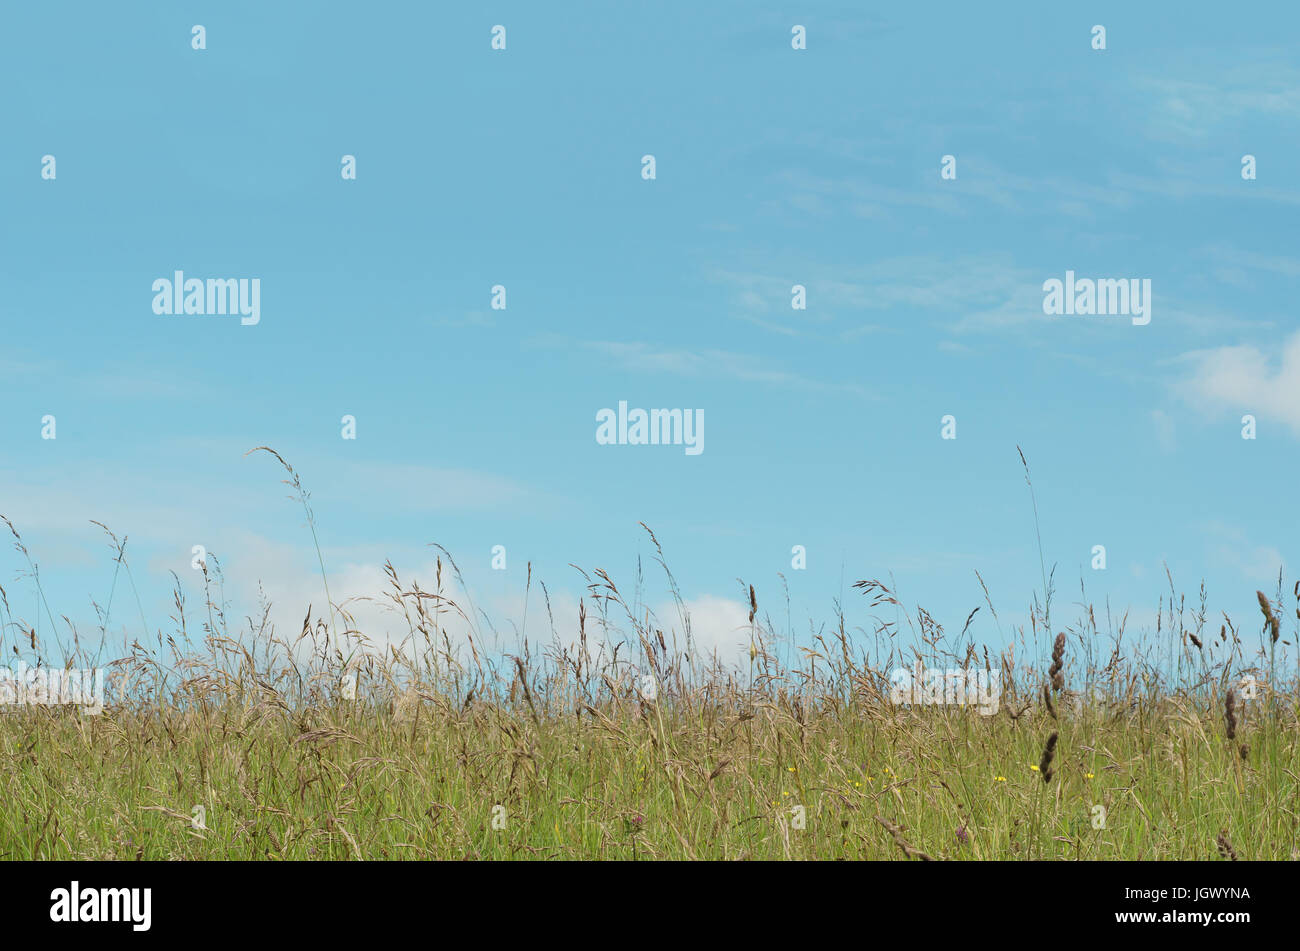 Nature fond d'une verte prairie sauvage avec une variété d'herbes longues et les pissenlits, contre un ciel bleu lumineux sur une journée en juin. Banque D'Images